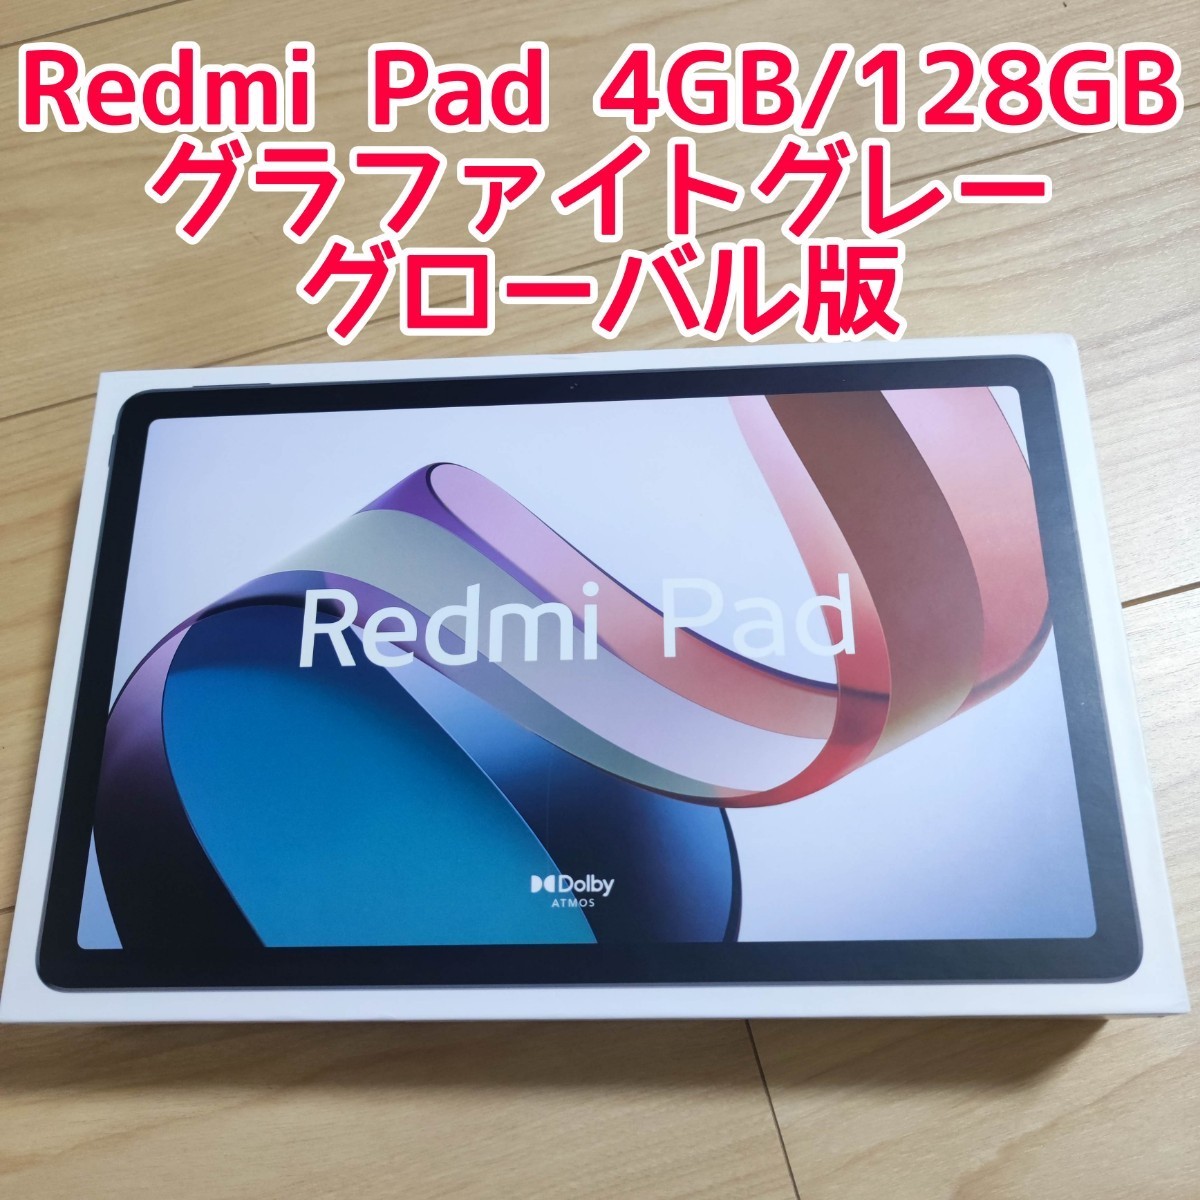 日産 redmi pad 4GB+128GB グローバル版 | www.adkhighpeaks.com